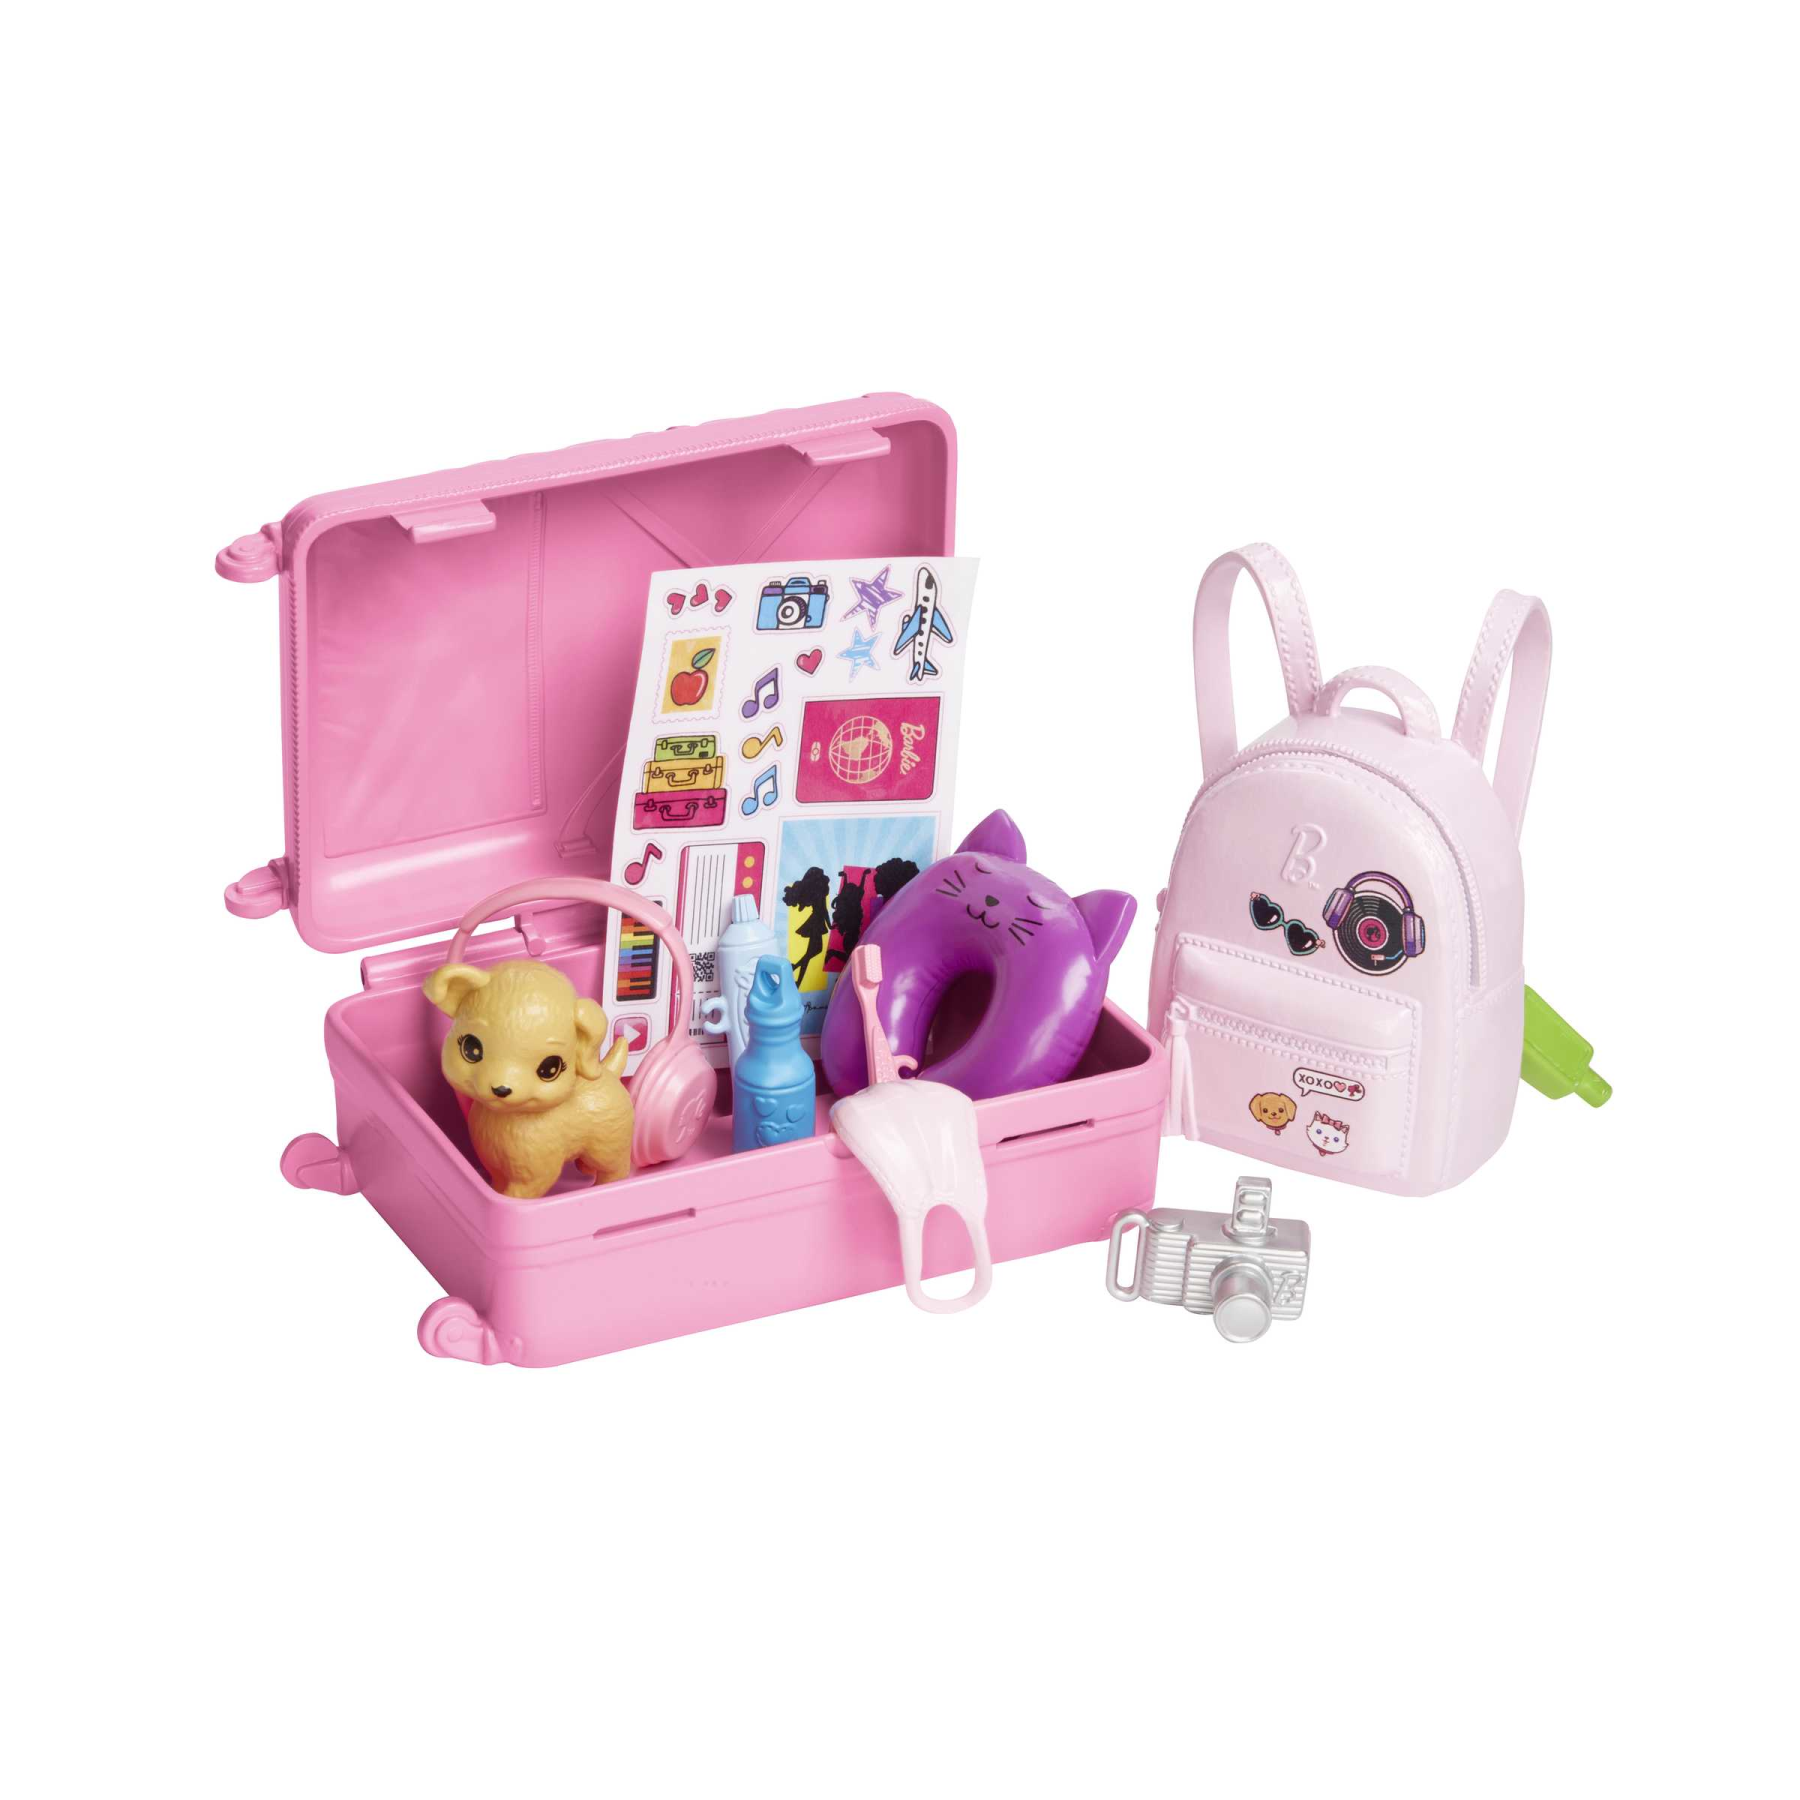 Barbie - set da viaggio malibu, bambola con cagnolino e valigie con  rotelle incluse, 10+ accessori, giocattolo per bambini, 3+ anni, hjy18 -  Toys Center